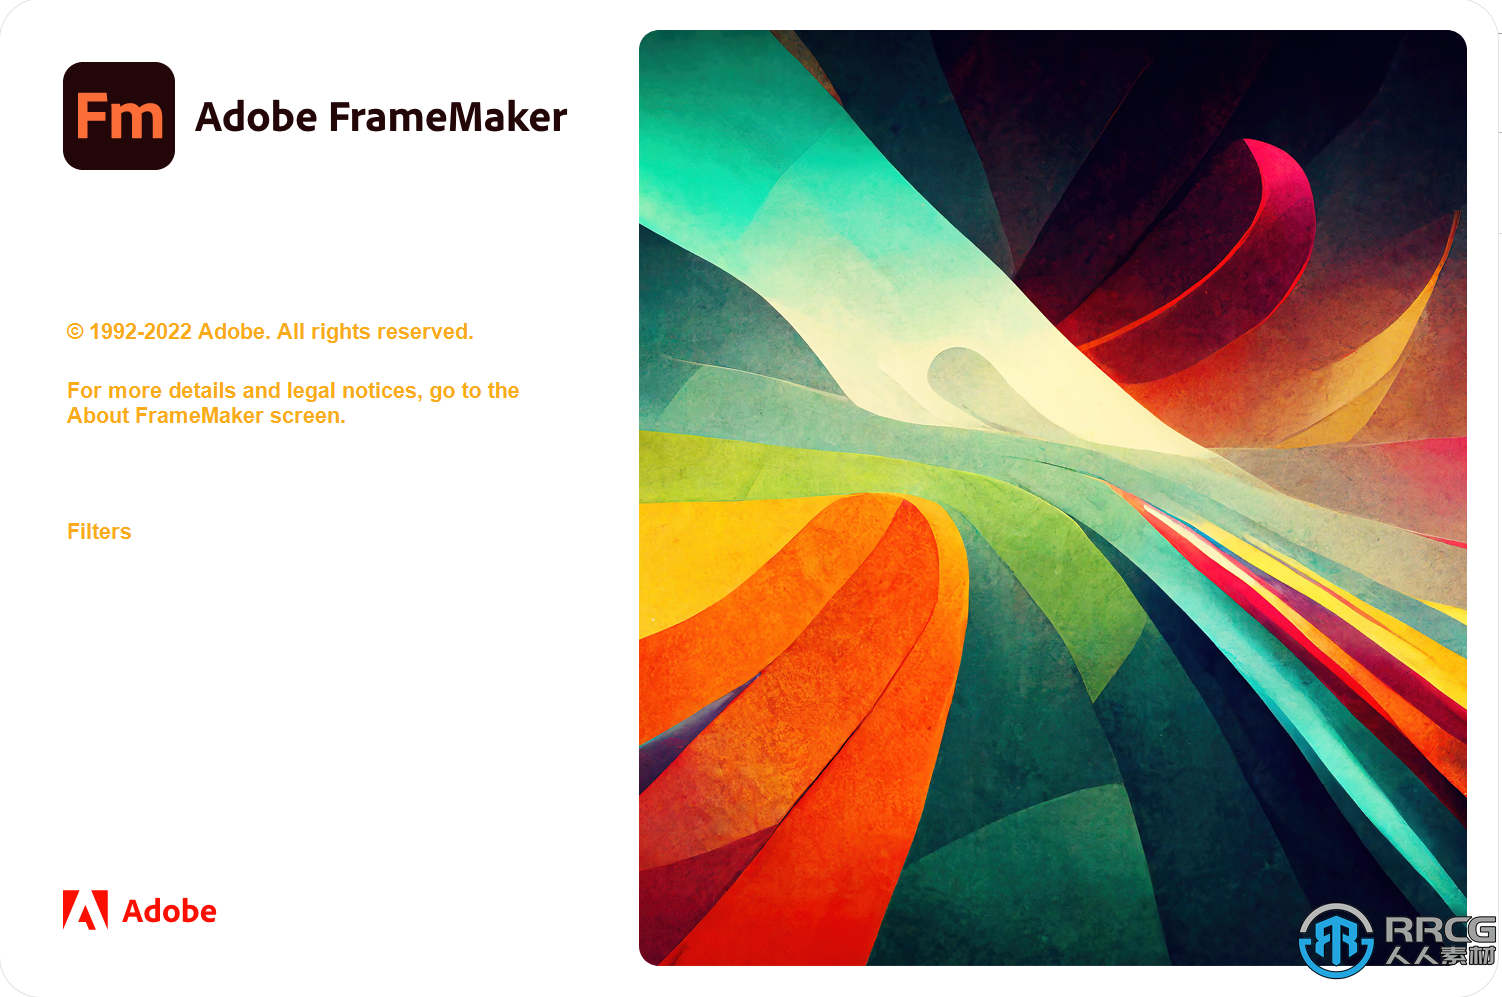 Adobe FrameMaker 2022頁面排版軟件V17.0.1.305版